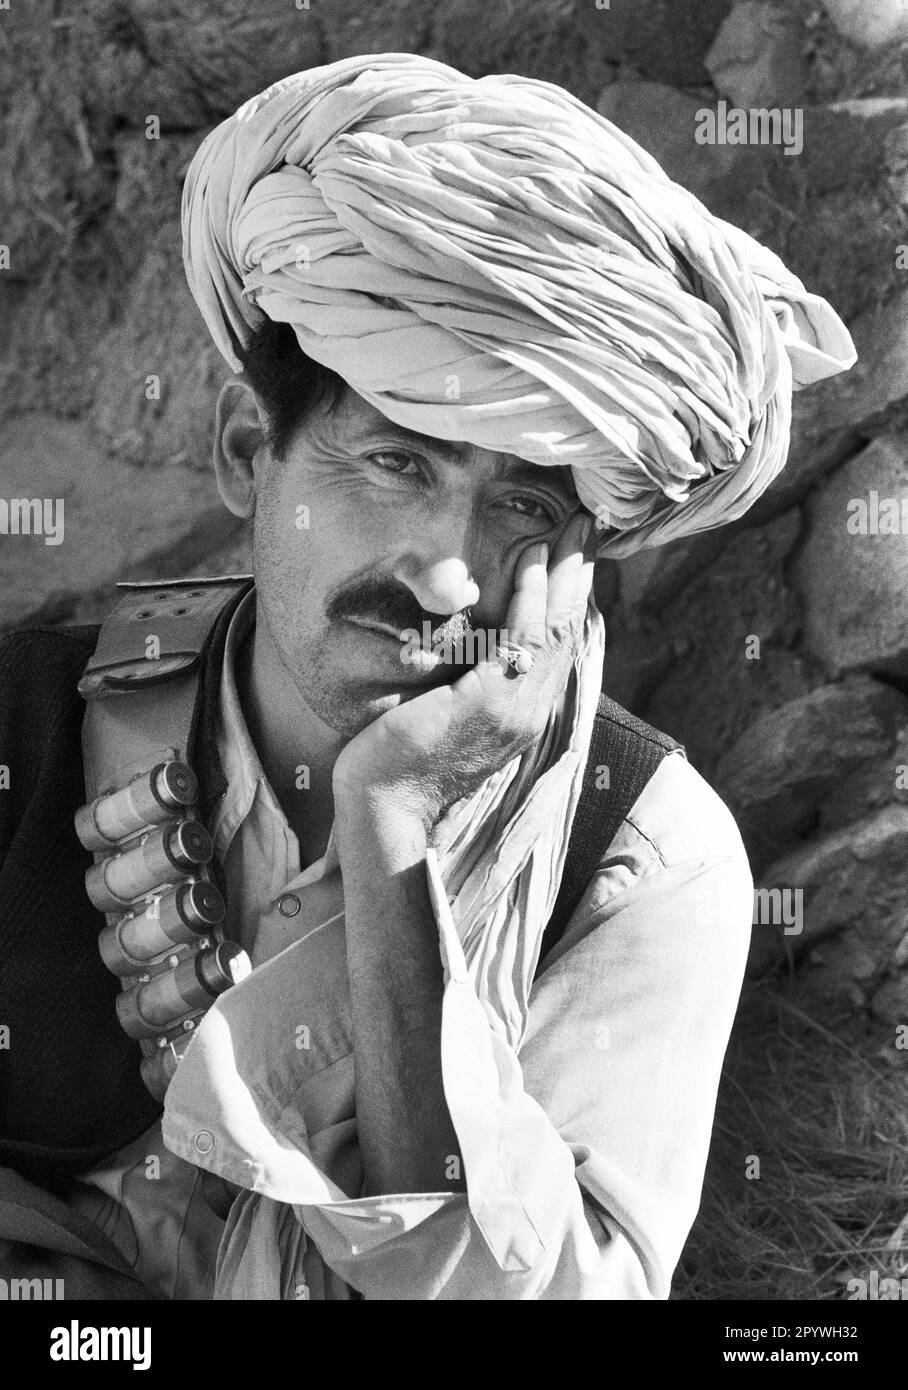 Afghanistan, Tani, 24.10.1990. Archiv-Nr.: 21-54-22 Foto: Ein Mudschaheddin-Kämpfer in den Bergen. [Maschinelle Übersetzung] Stockfoto